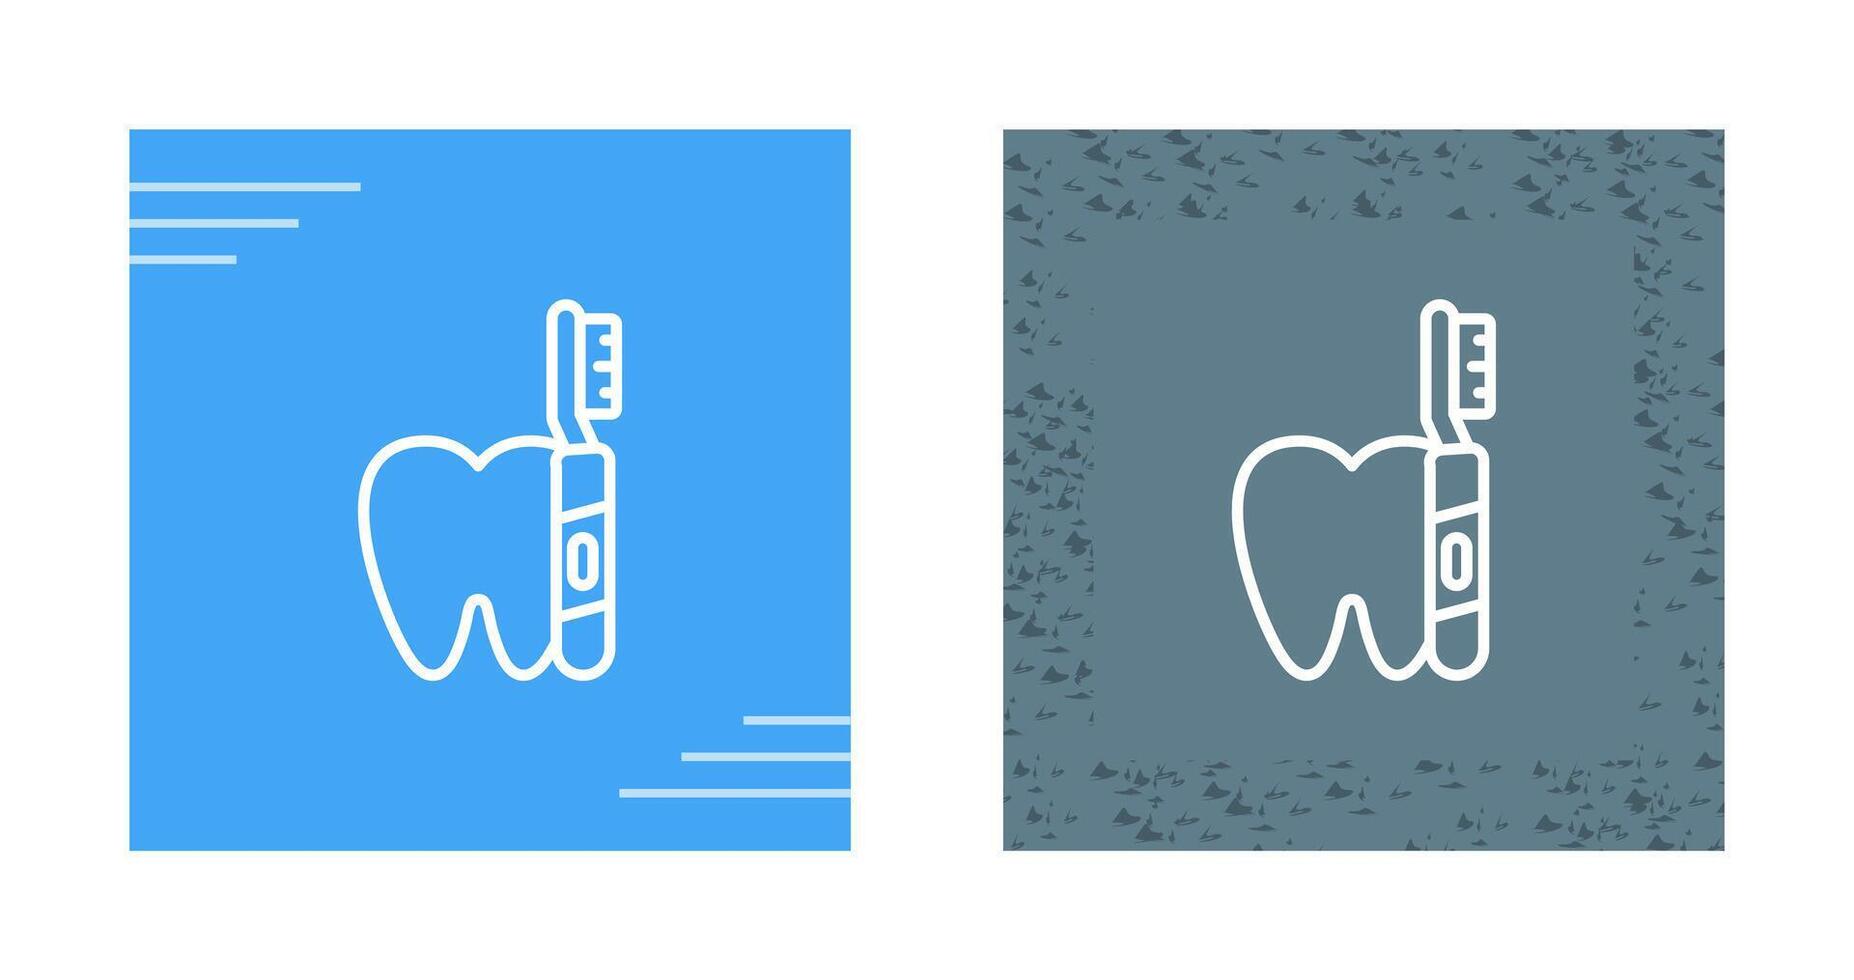 icono de vector de cepillo de dientes